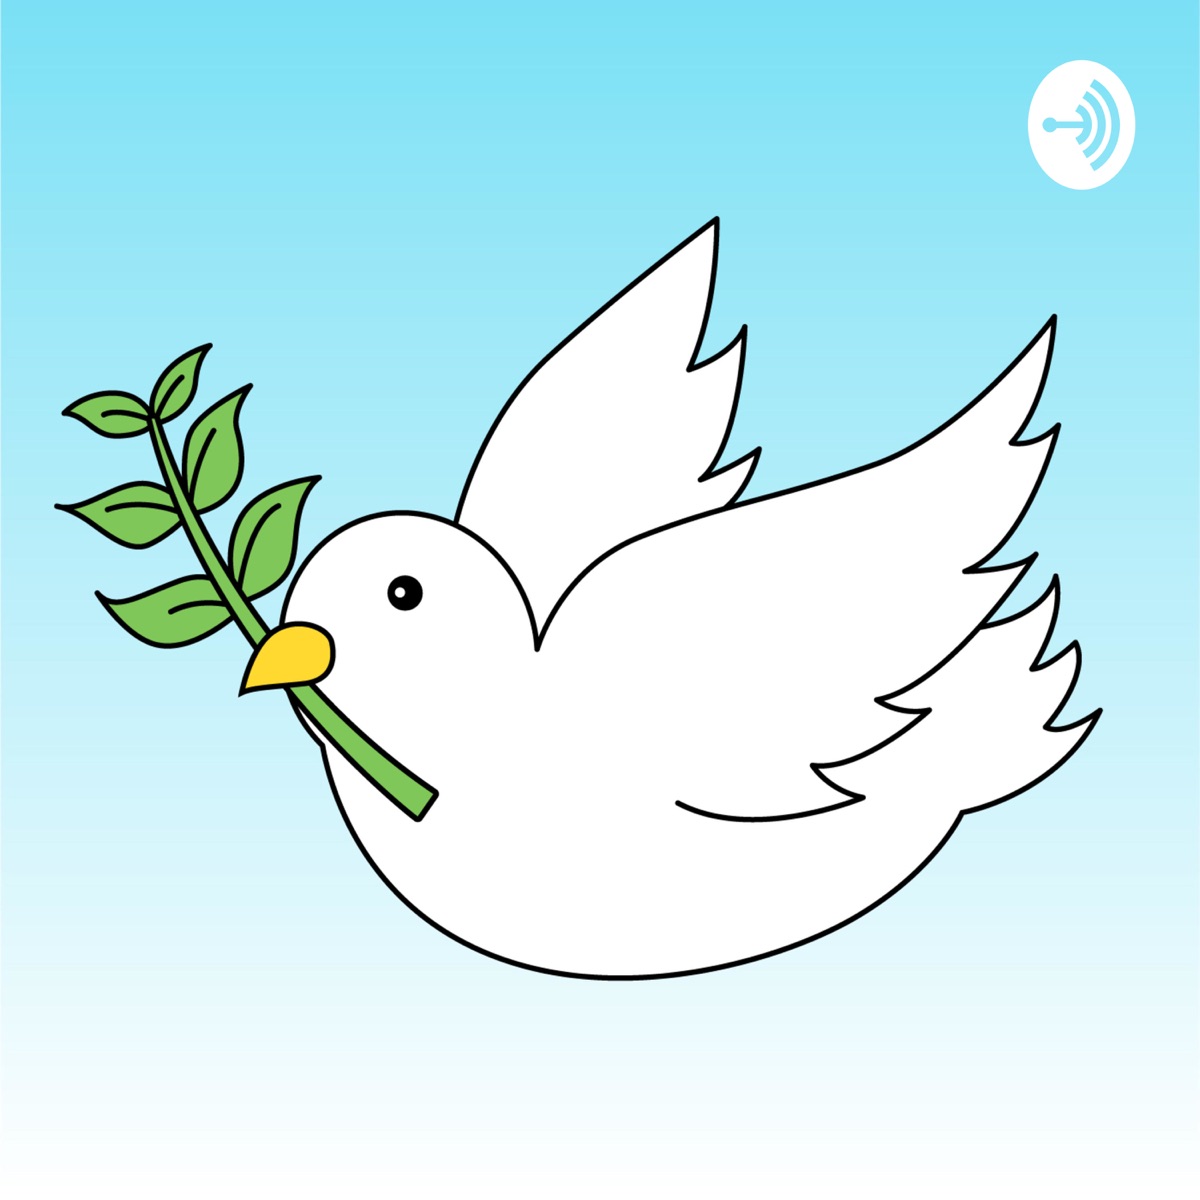 キリストの平和教会 Podcast Podtail